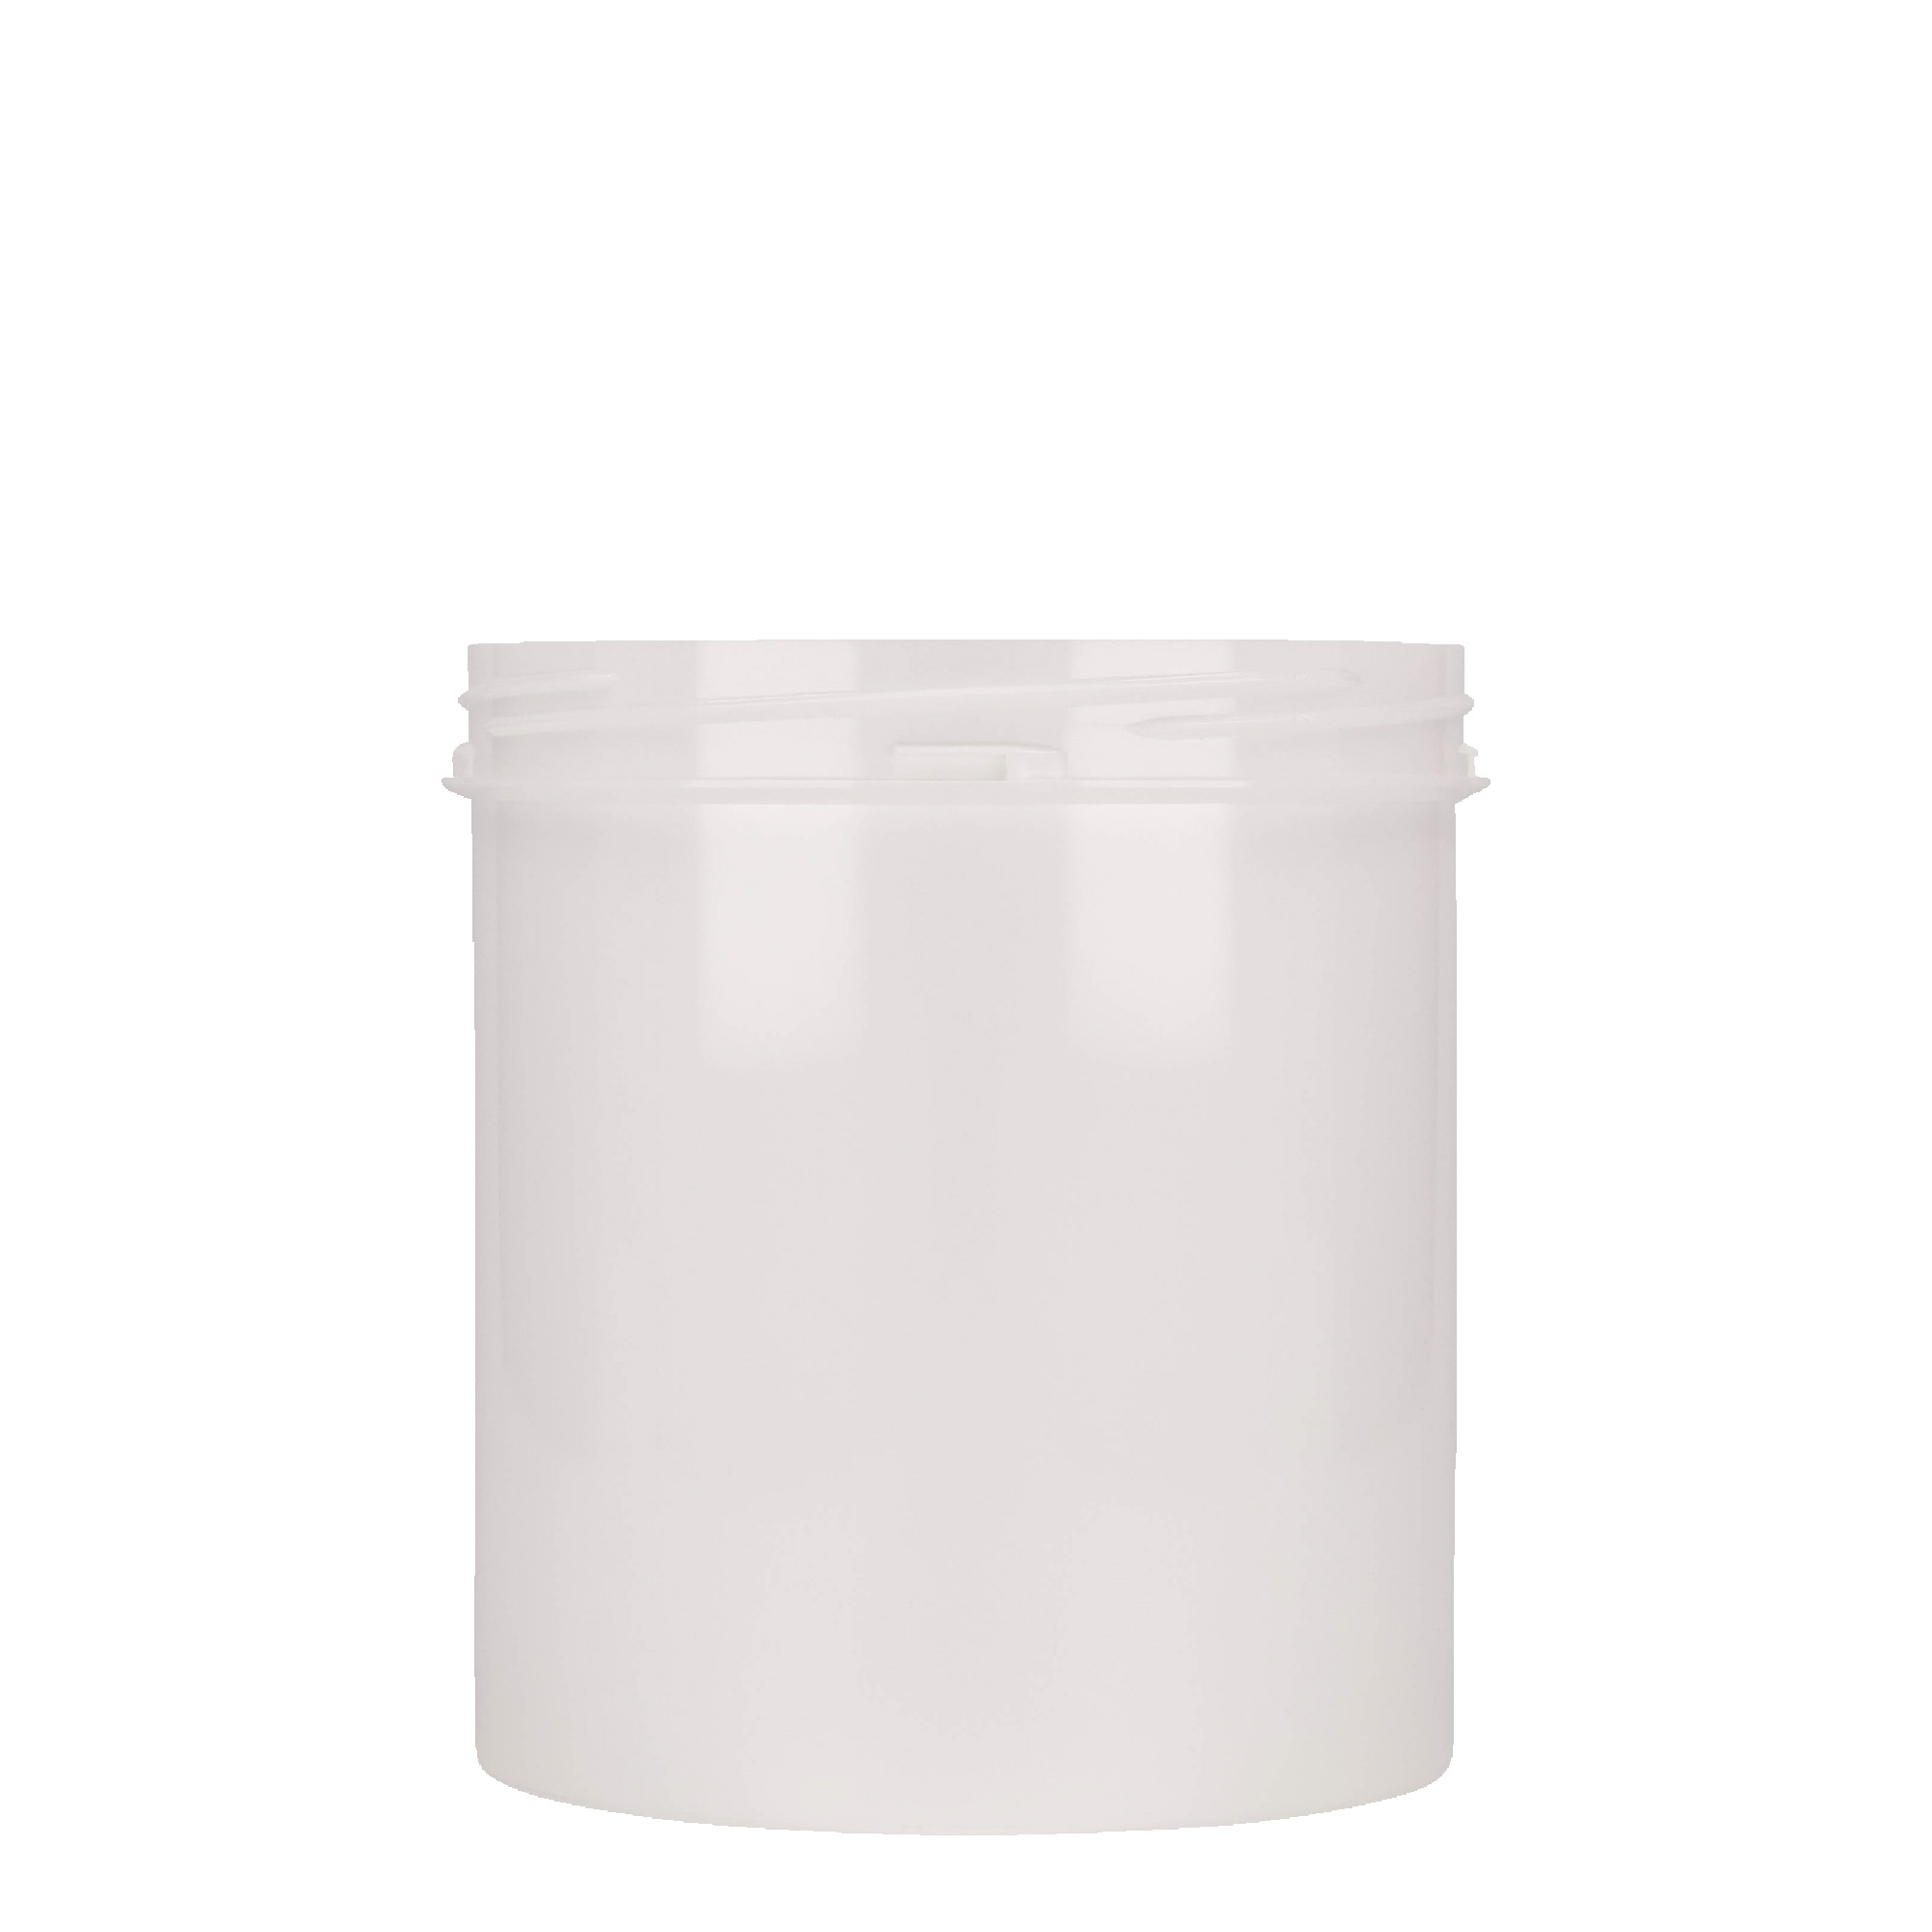 1,000 ml plastic jar 'Securilock', PP, white, closure: screw cap